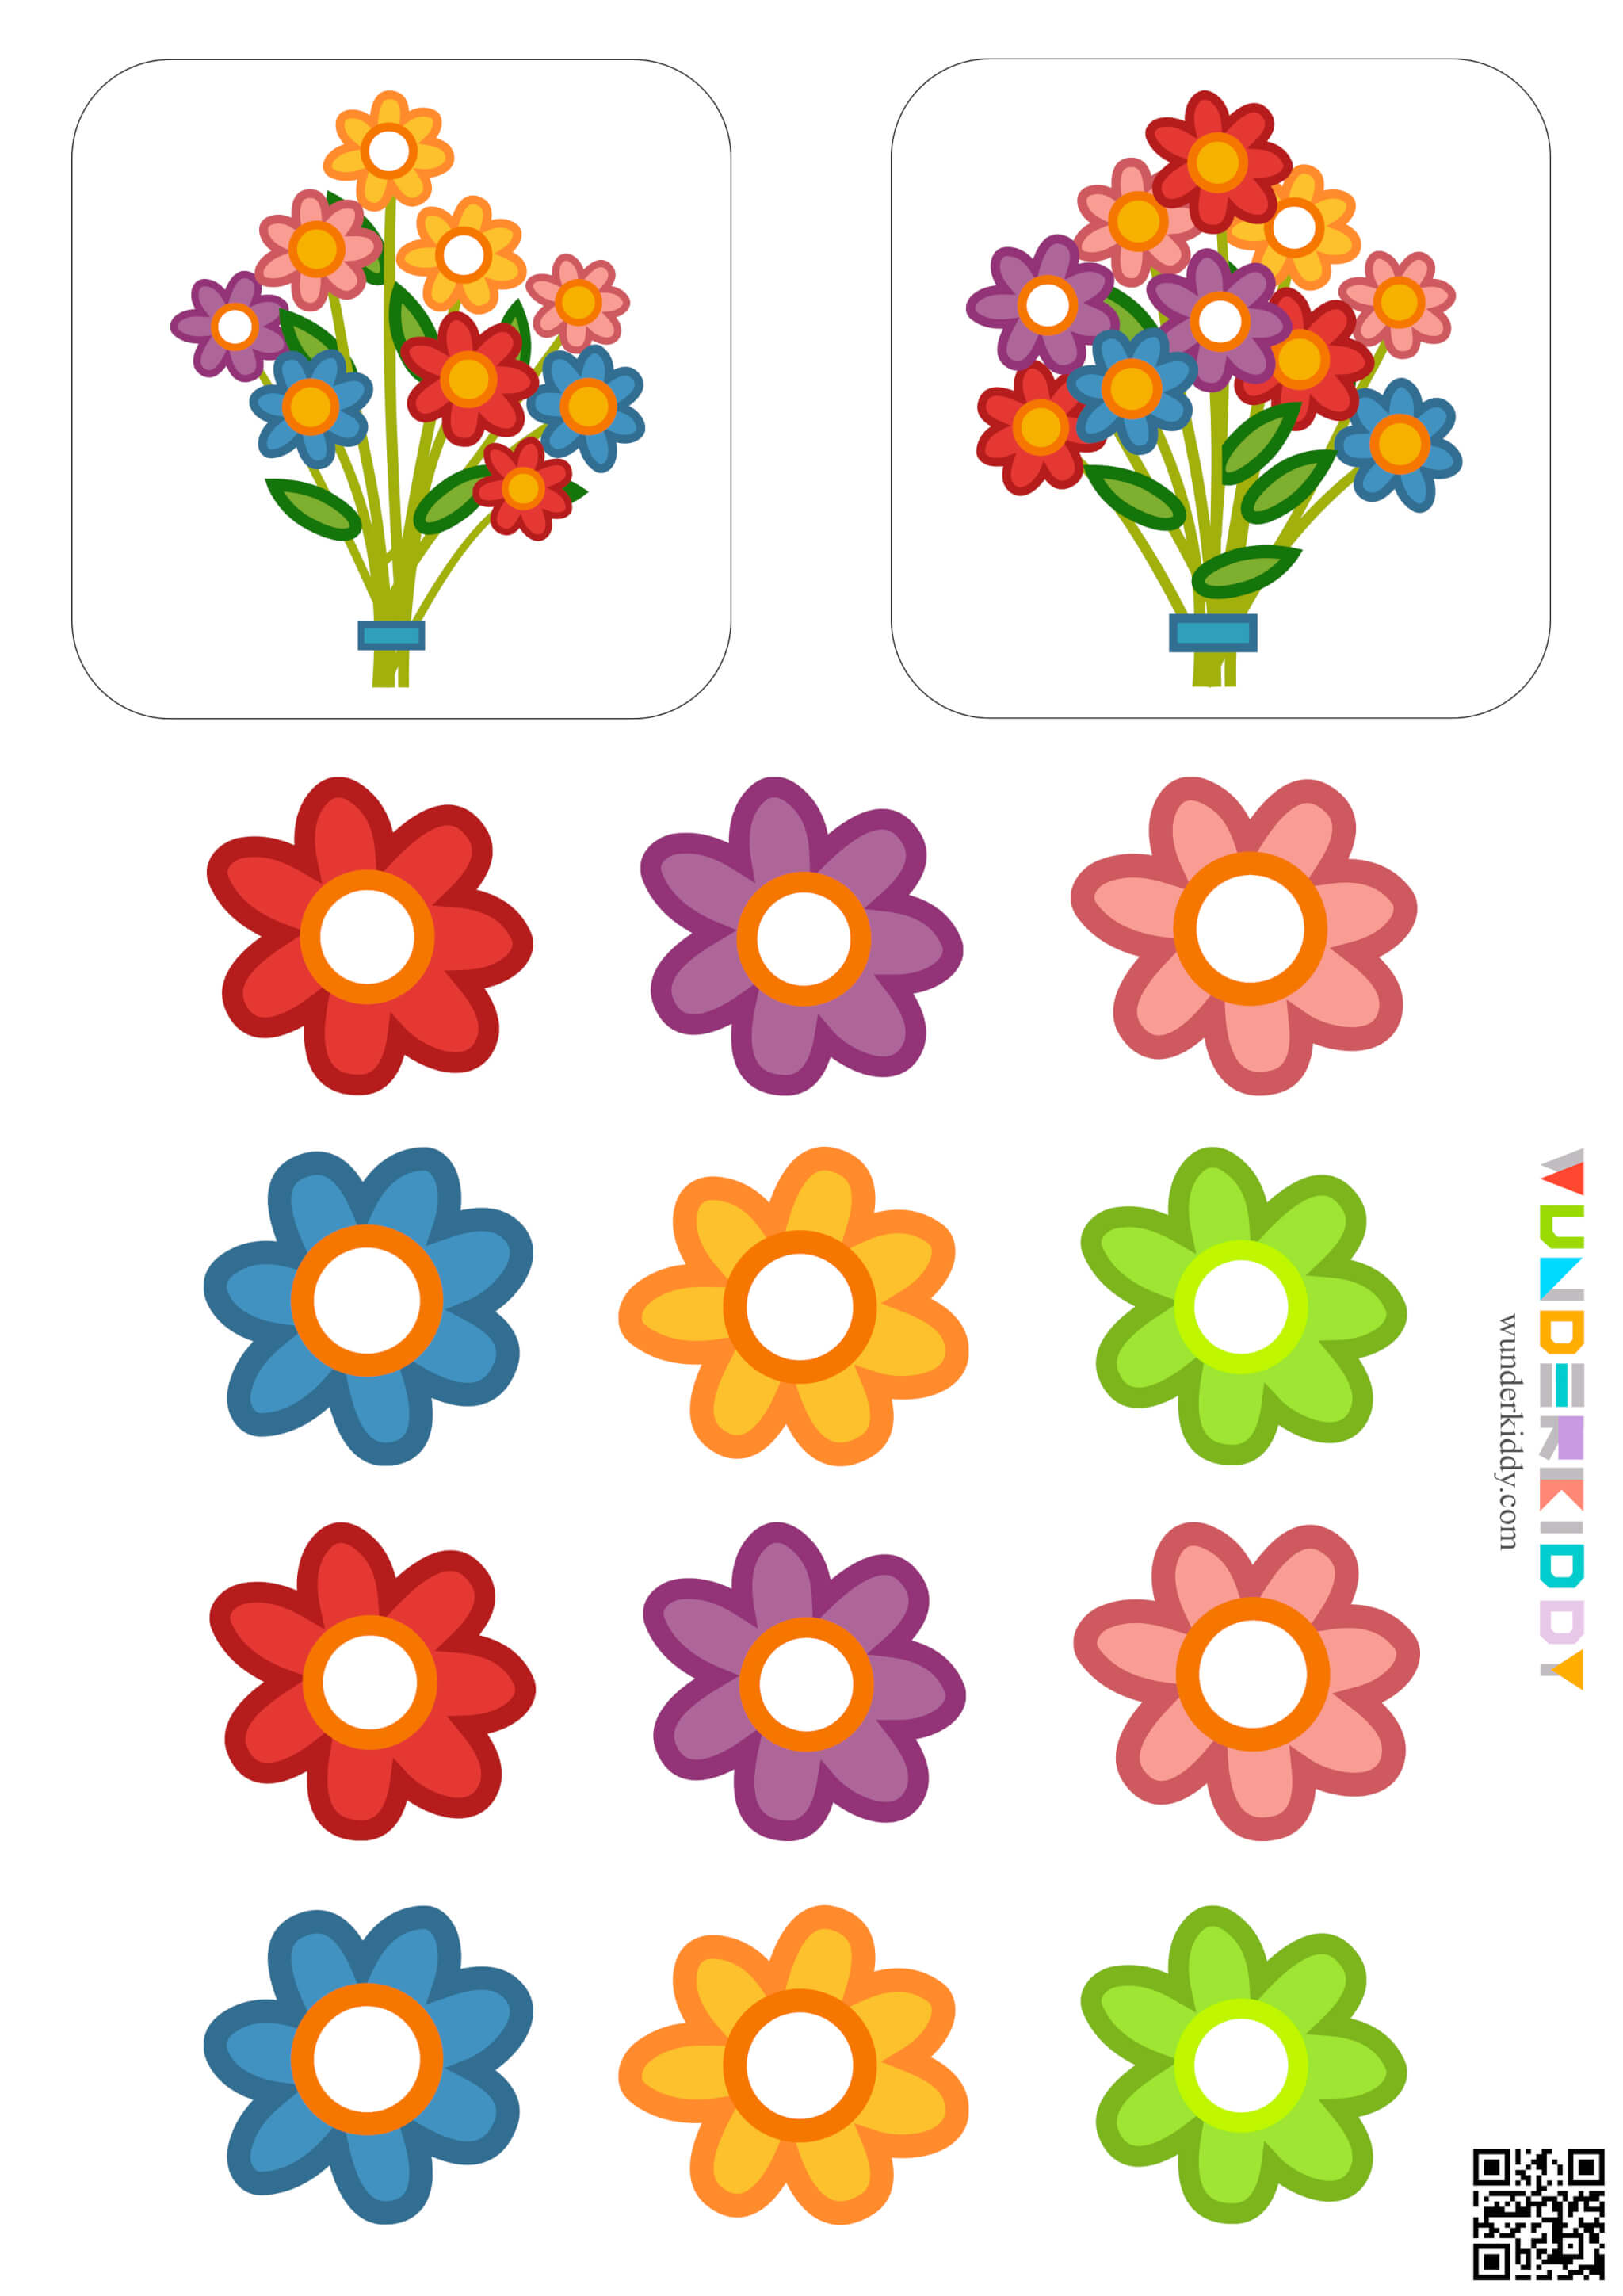 Математическая игра «Посчитай цветы» - Изображение 5